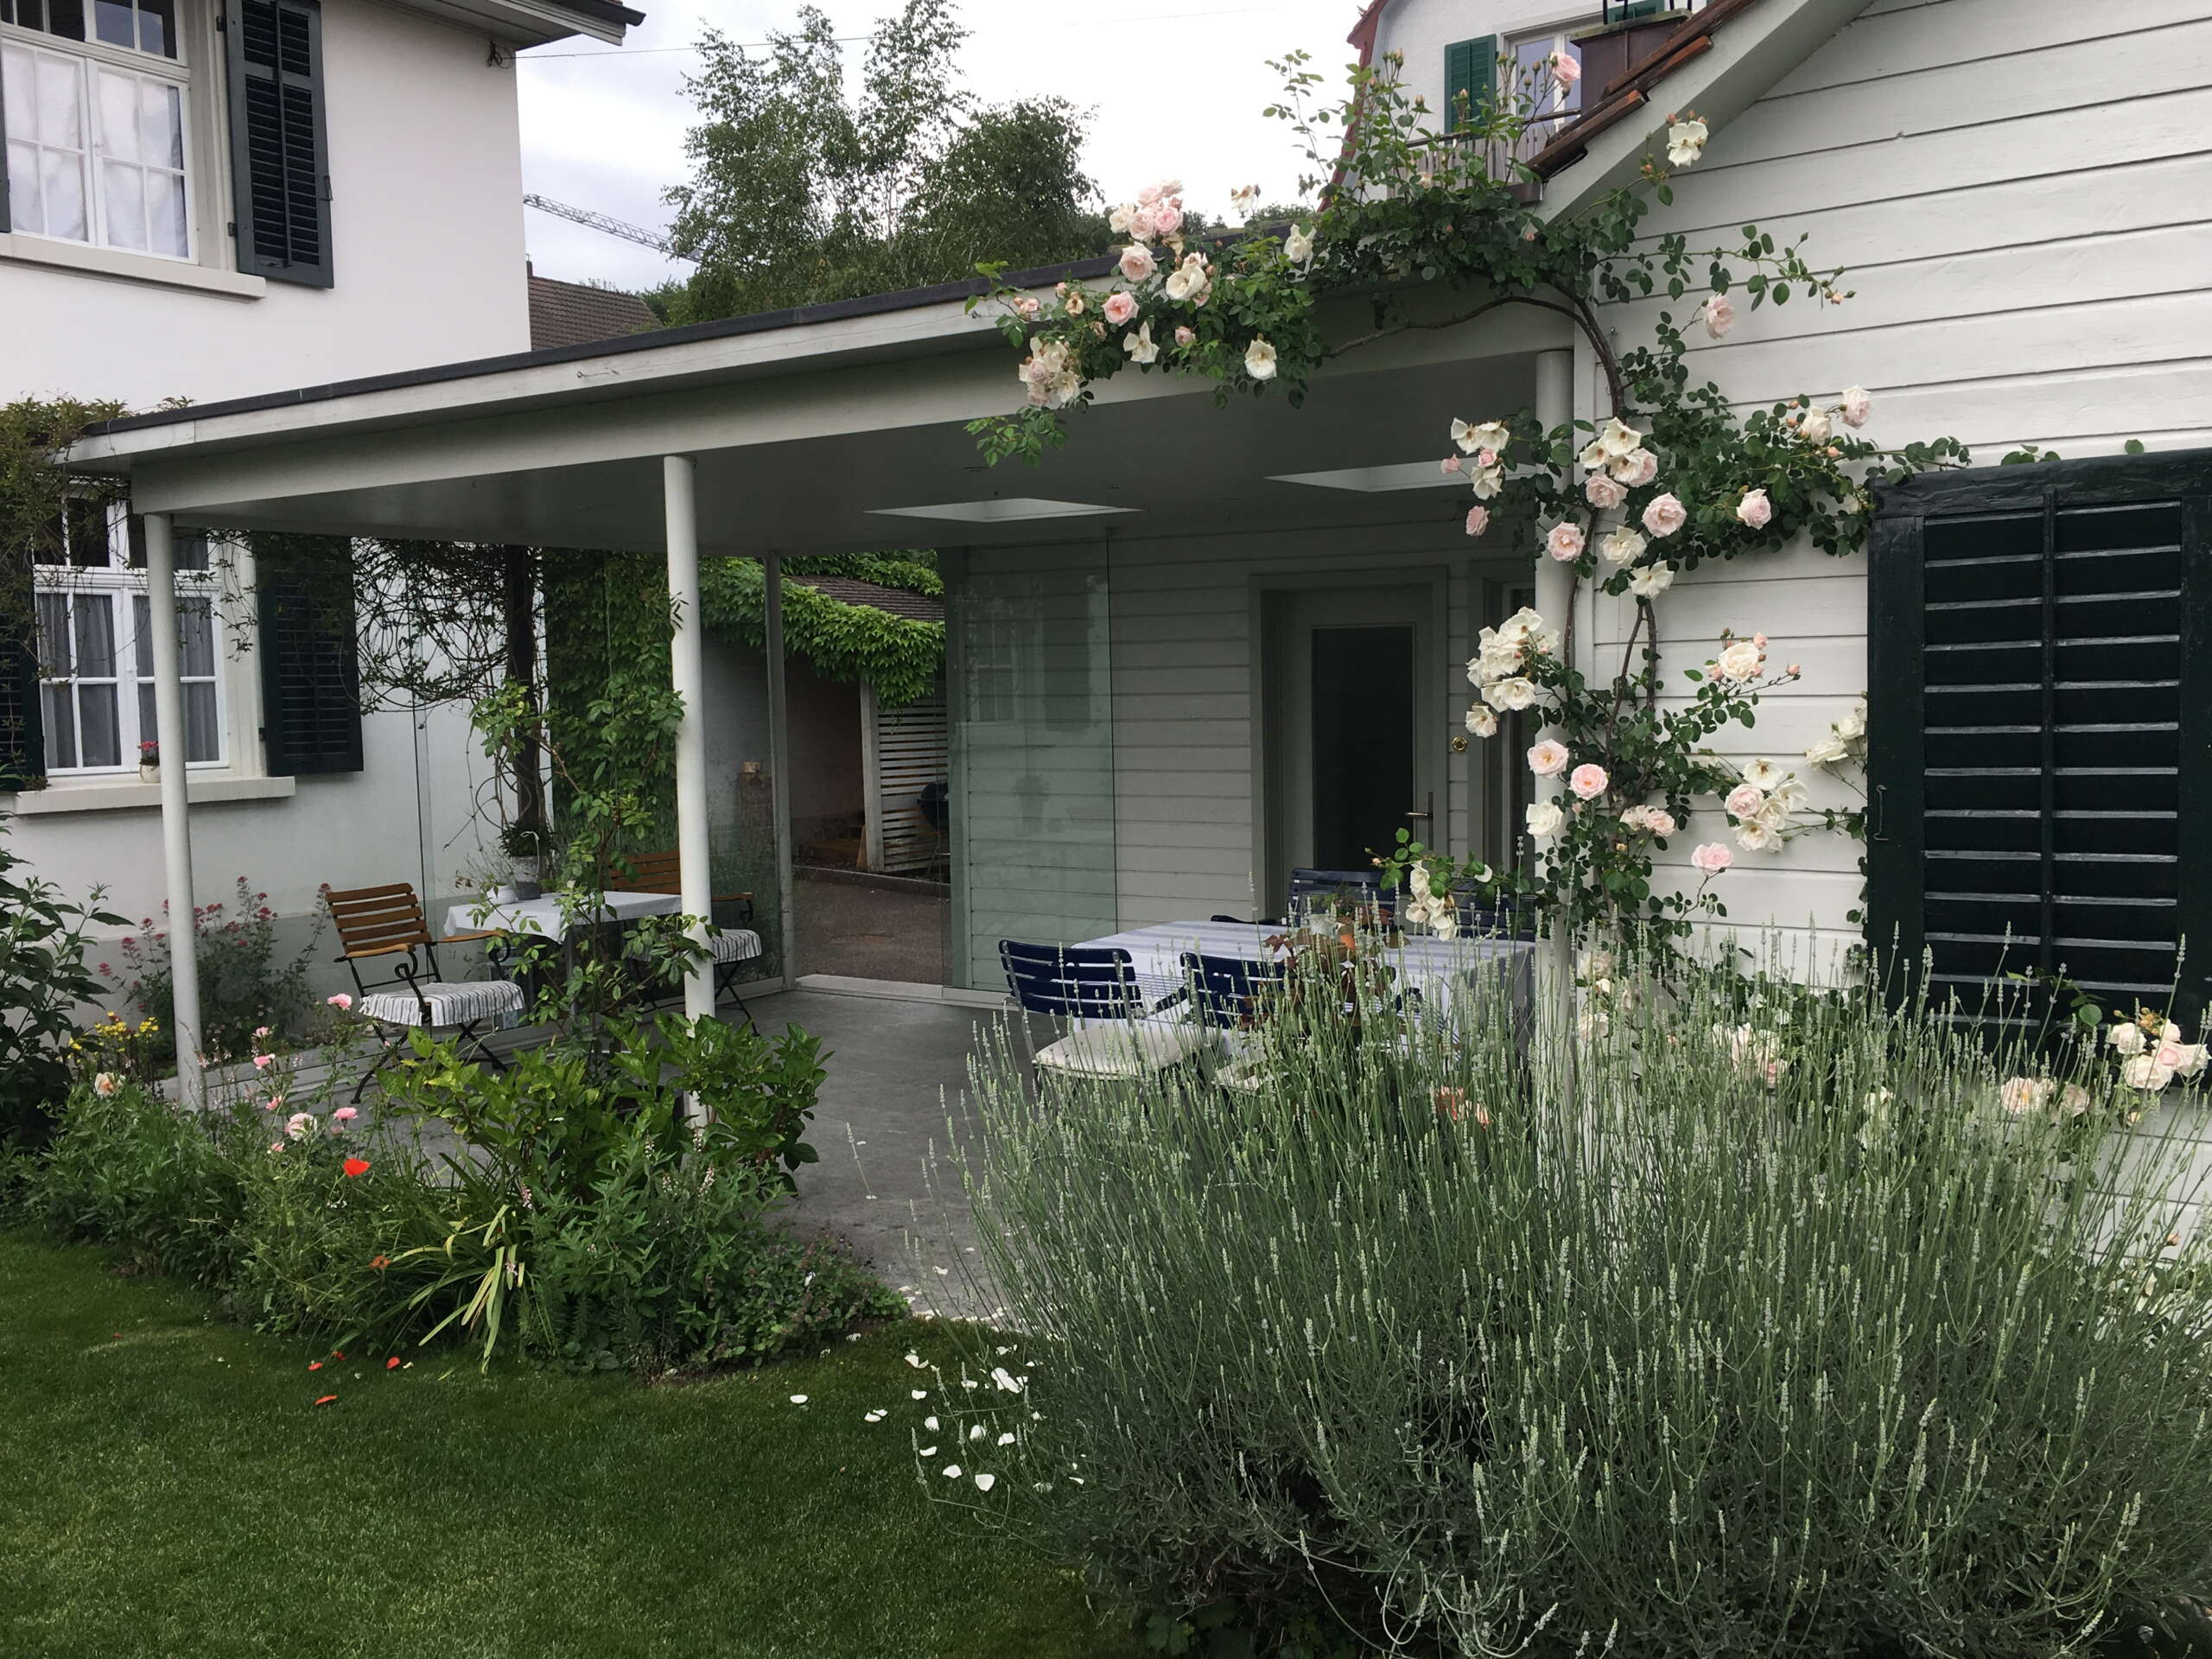 Garten mit Terrasse der Ferienwohnung Kohler. Grüner Garten und weisse Rosen an der Hauswand